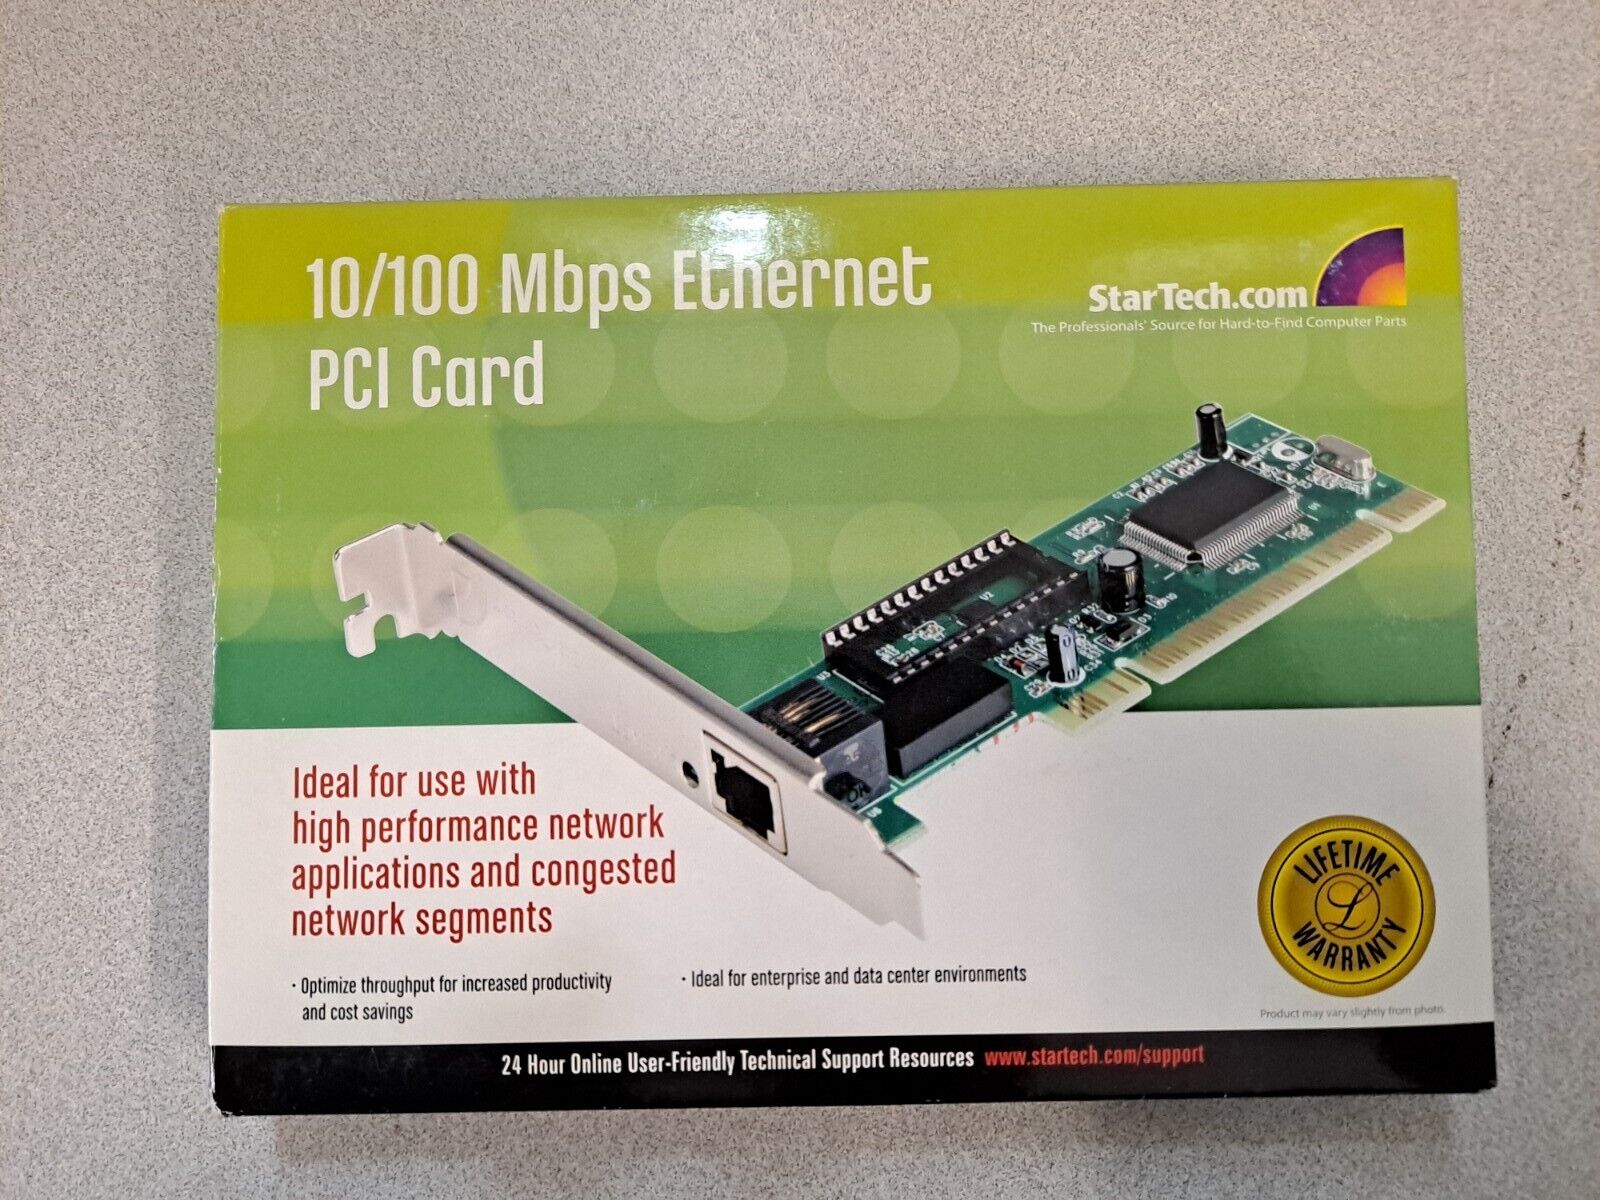 Startech 10/100 Mbps Ethernet PCI Card